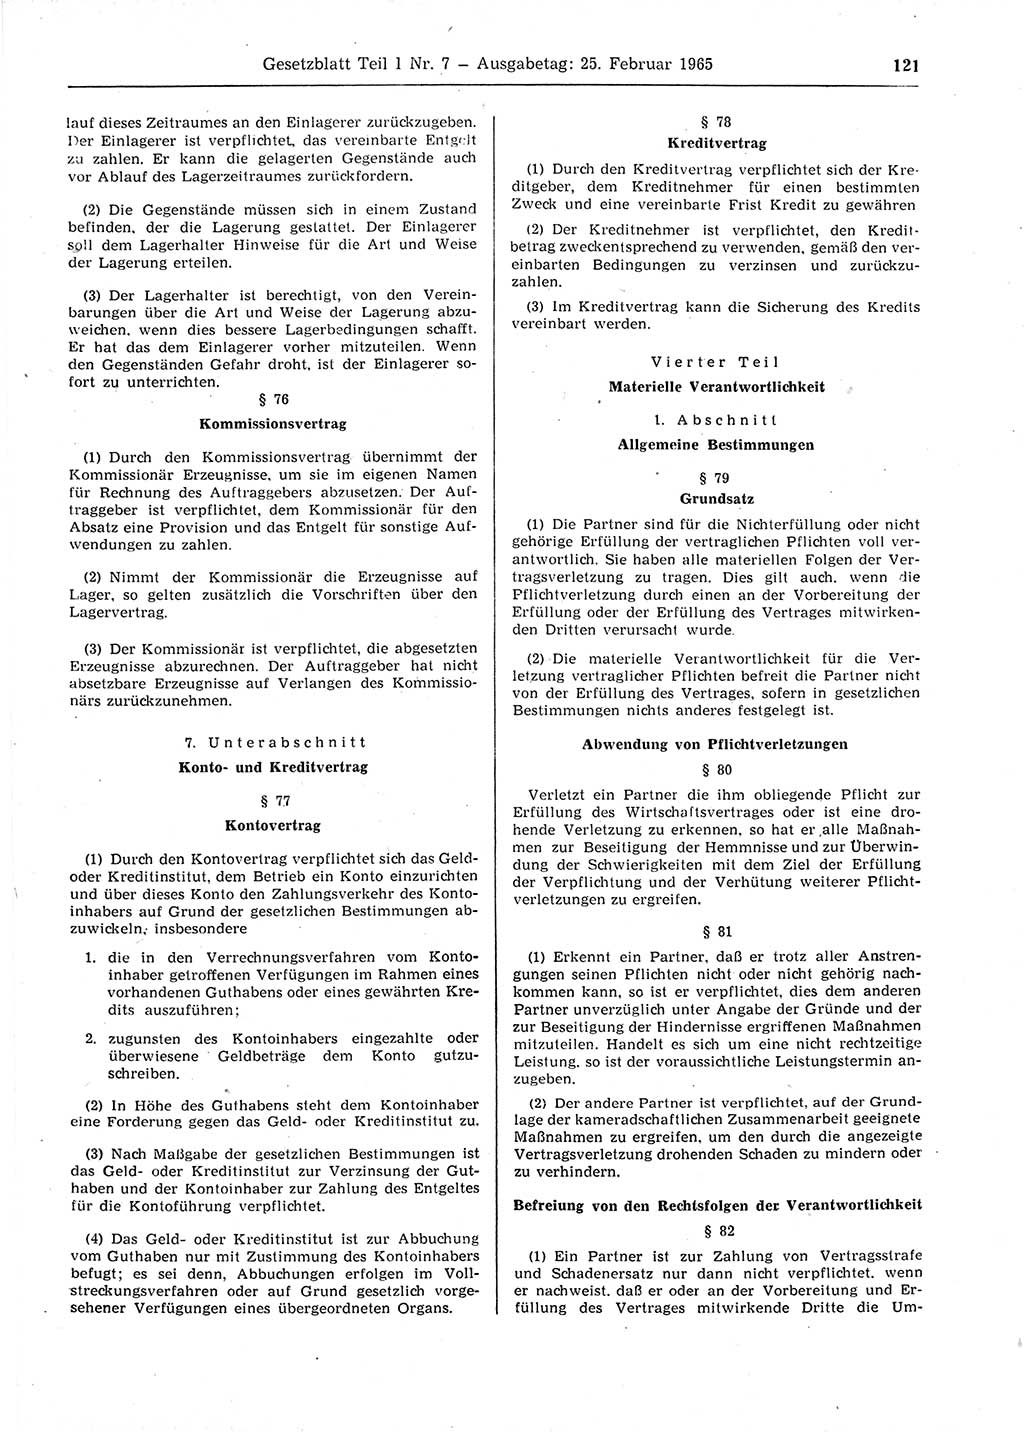 Gesetzblatt (GBl.) der Deutschen Demokratischen Republik (DDR) Teil Ⅰ 1965, Seite 121 (GBl. DDR Ⅰ 1965, S. 121)